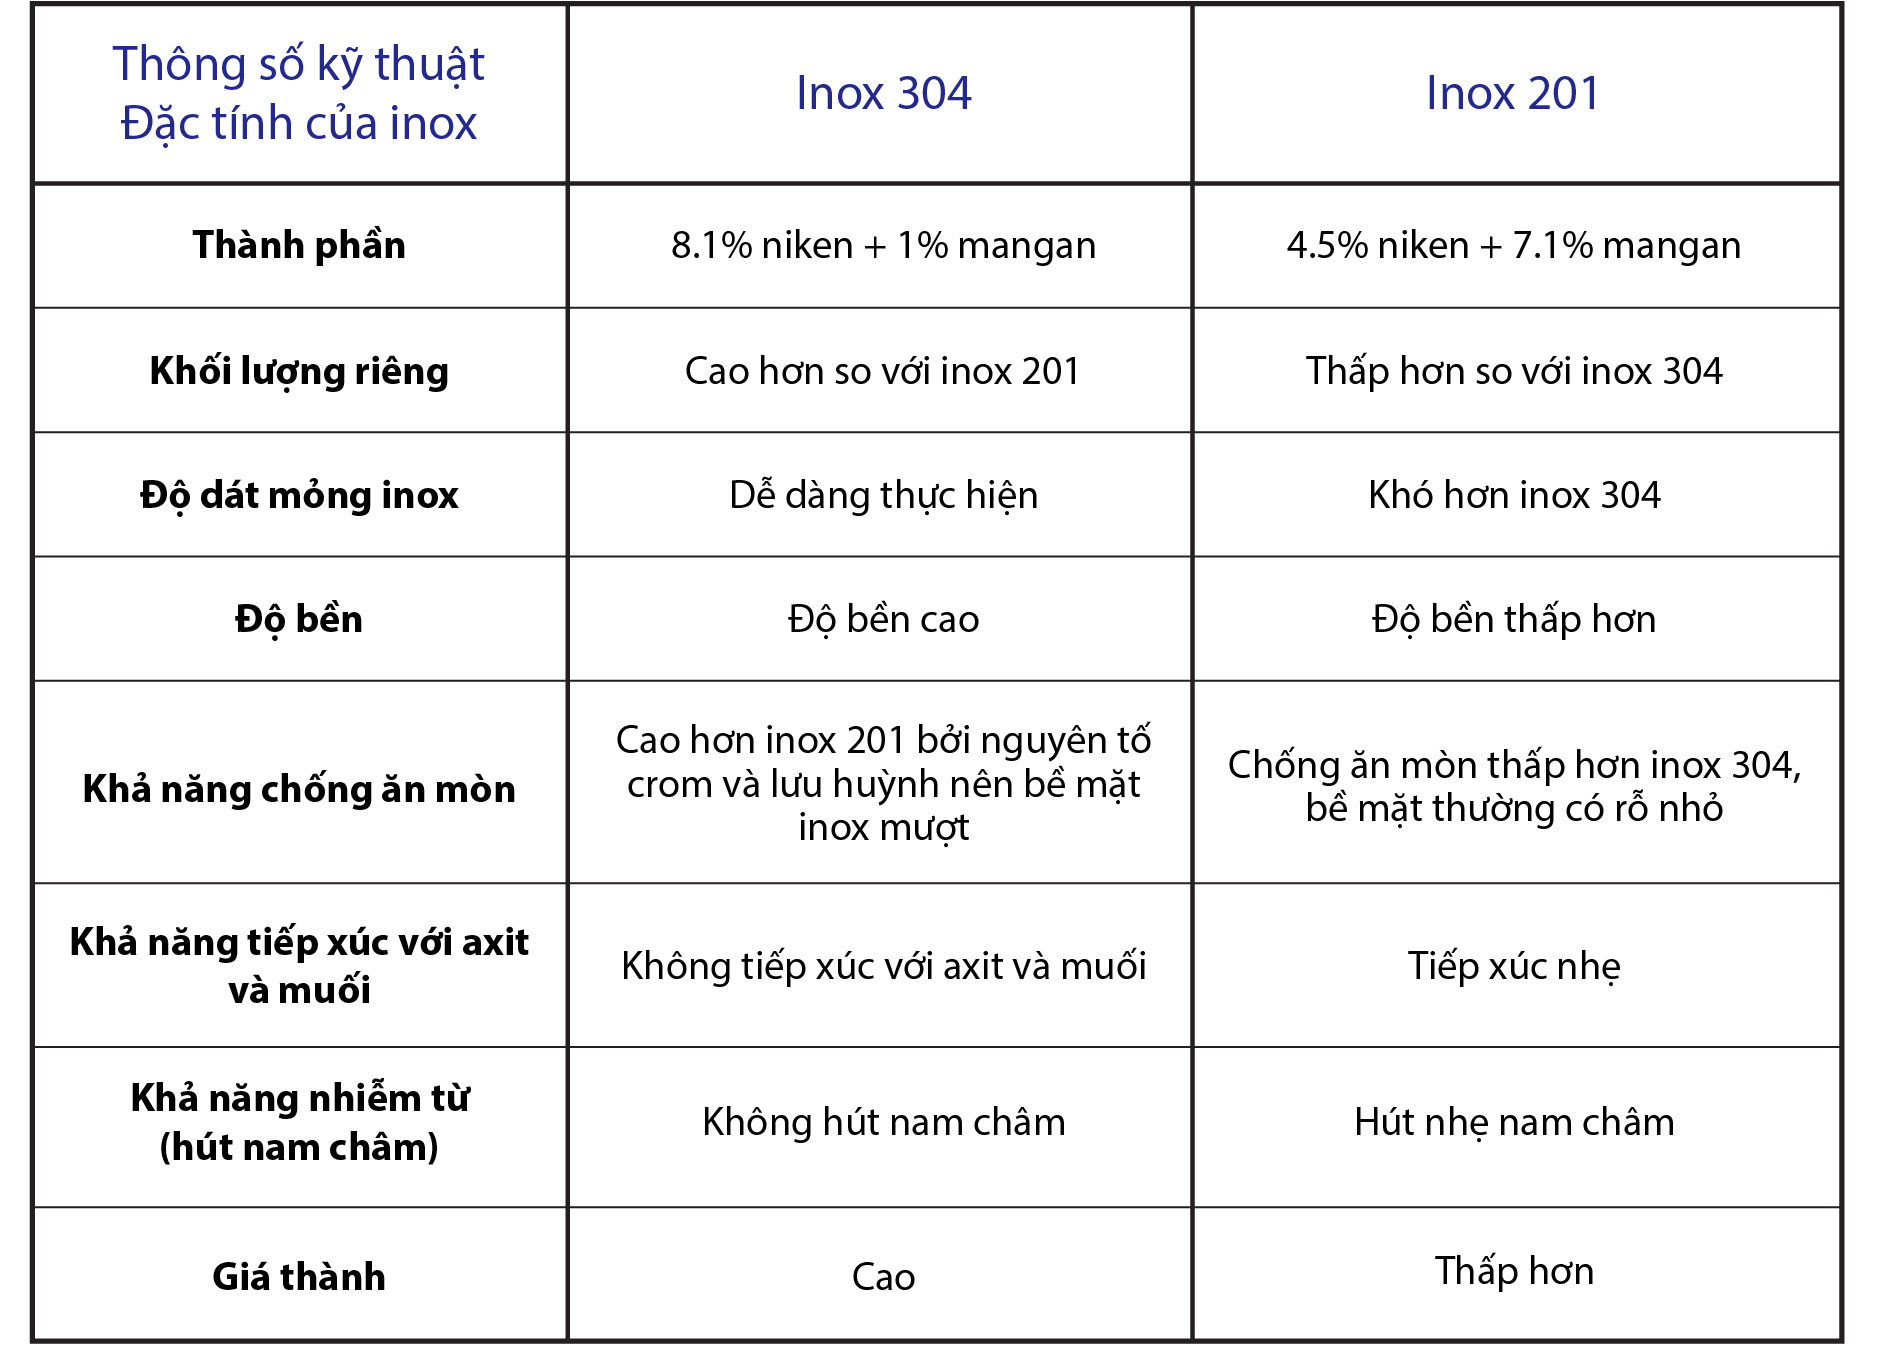   So sánh những ưu và nhược điểm của nồi cháo điện sản xuất inox 304 và inox 201.  